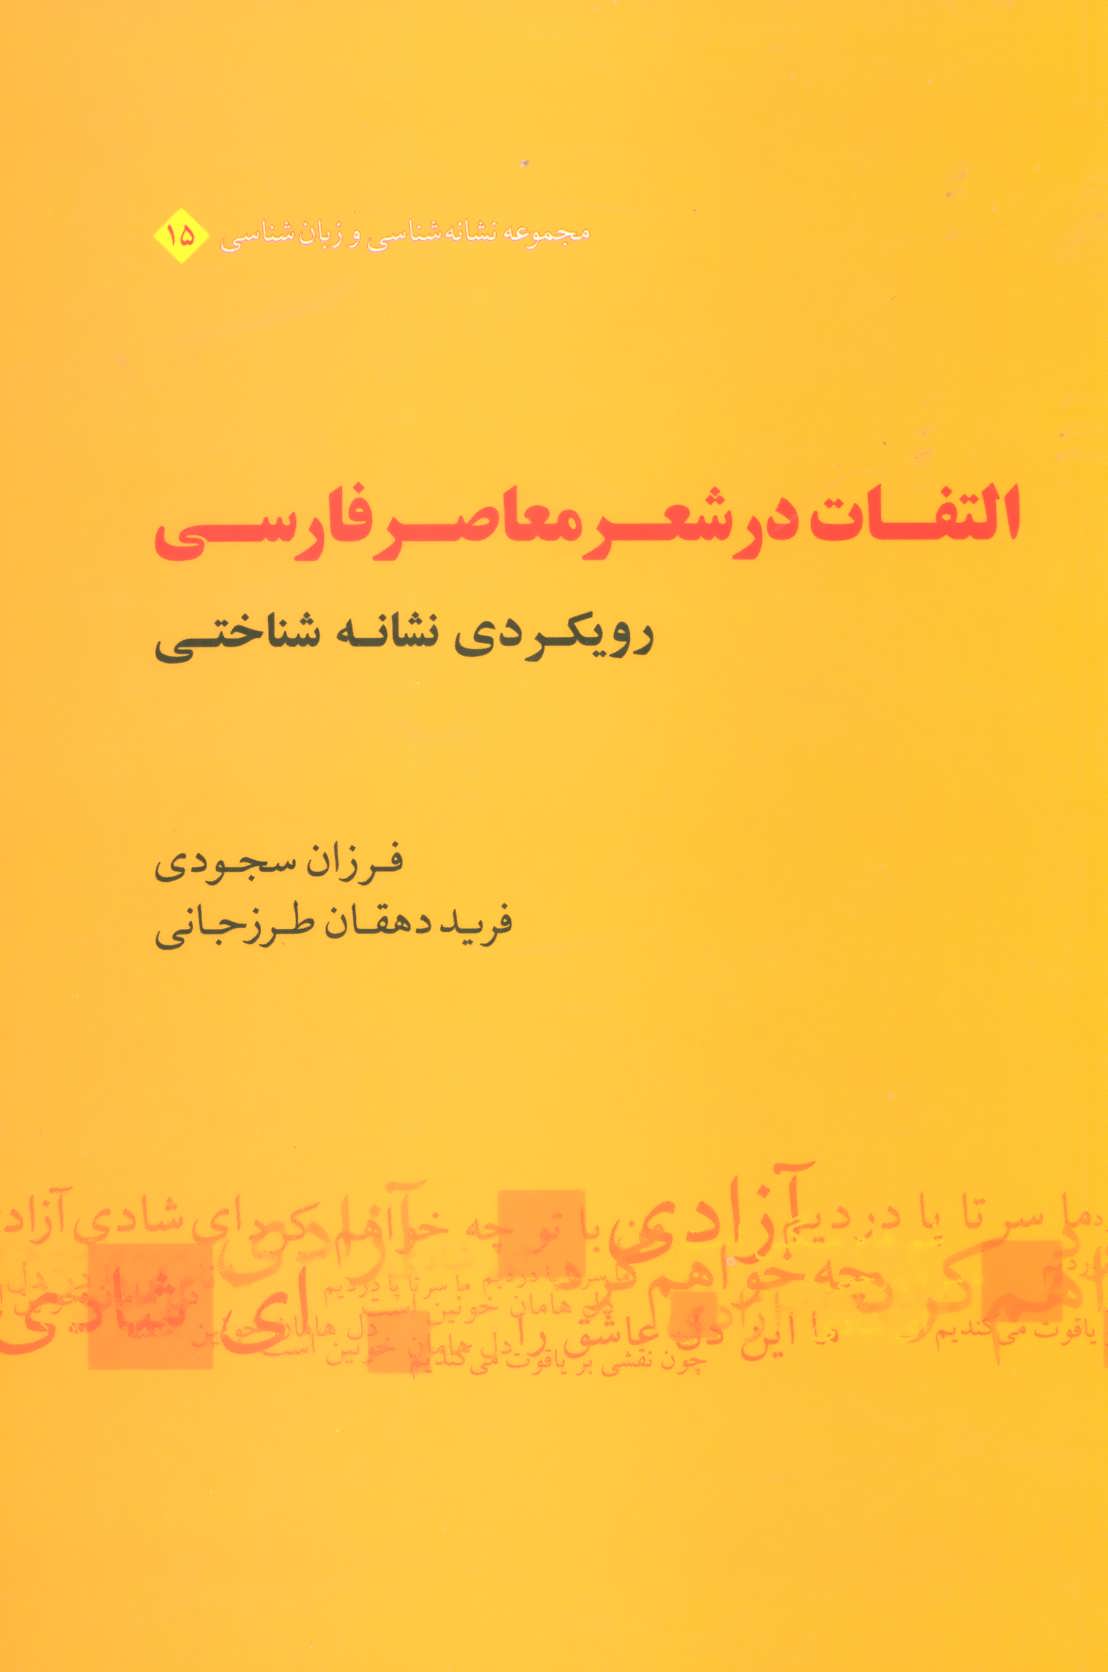 التفات در شعر معاصر فارسی - رویکردی نشانه شناختی